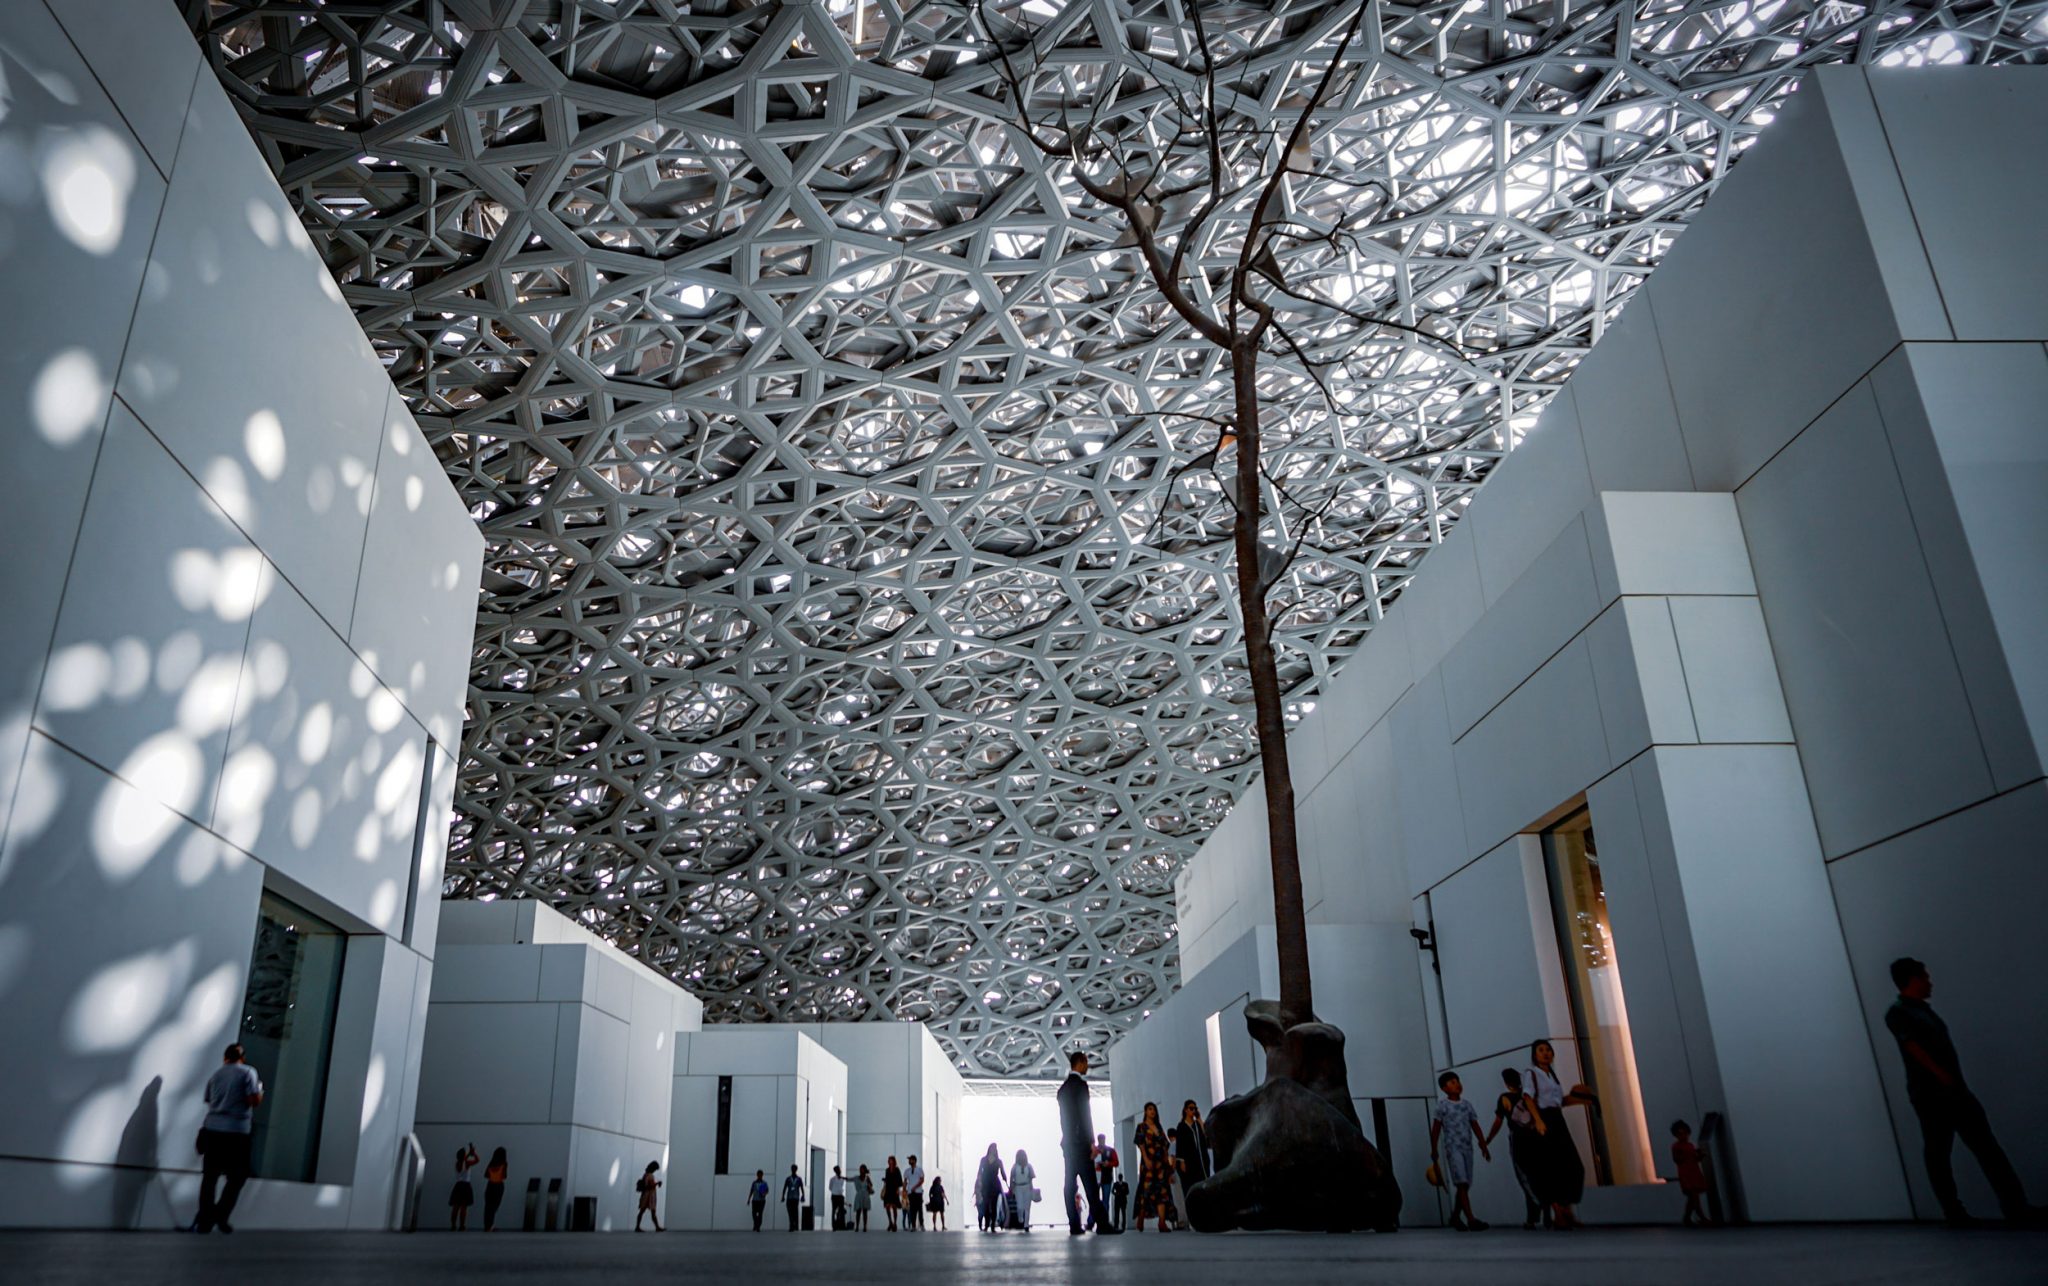 Louvre Abu Dhabi, ph: Agnieszka Kowalczyk / Unsplash